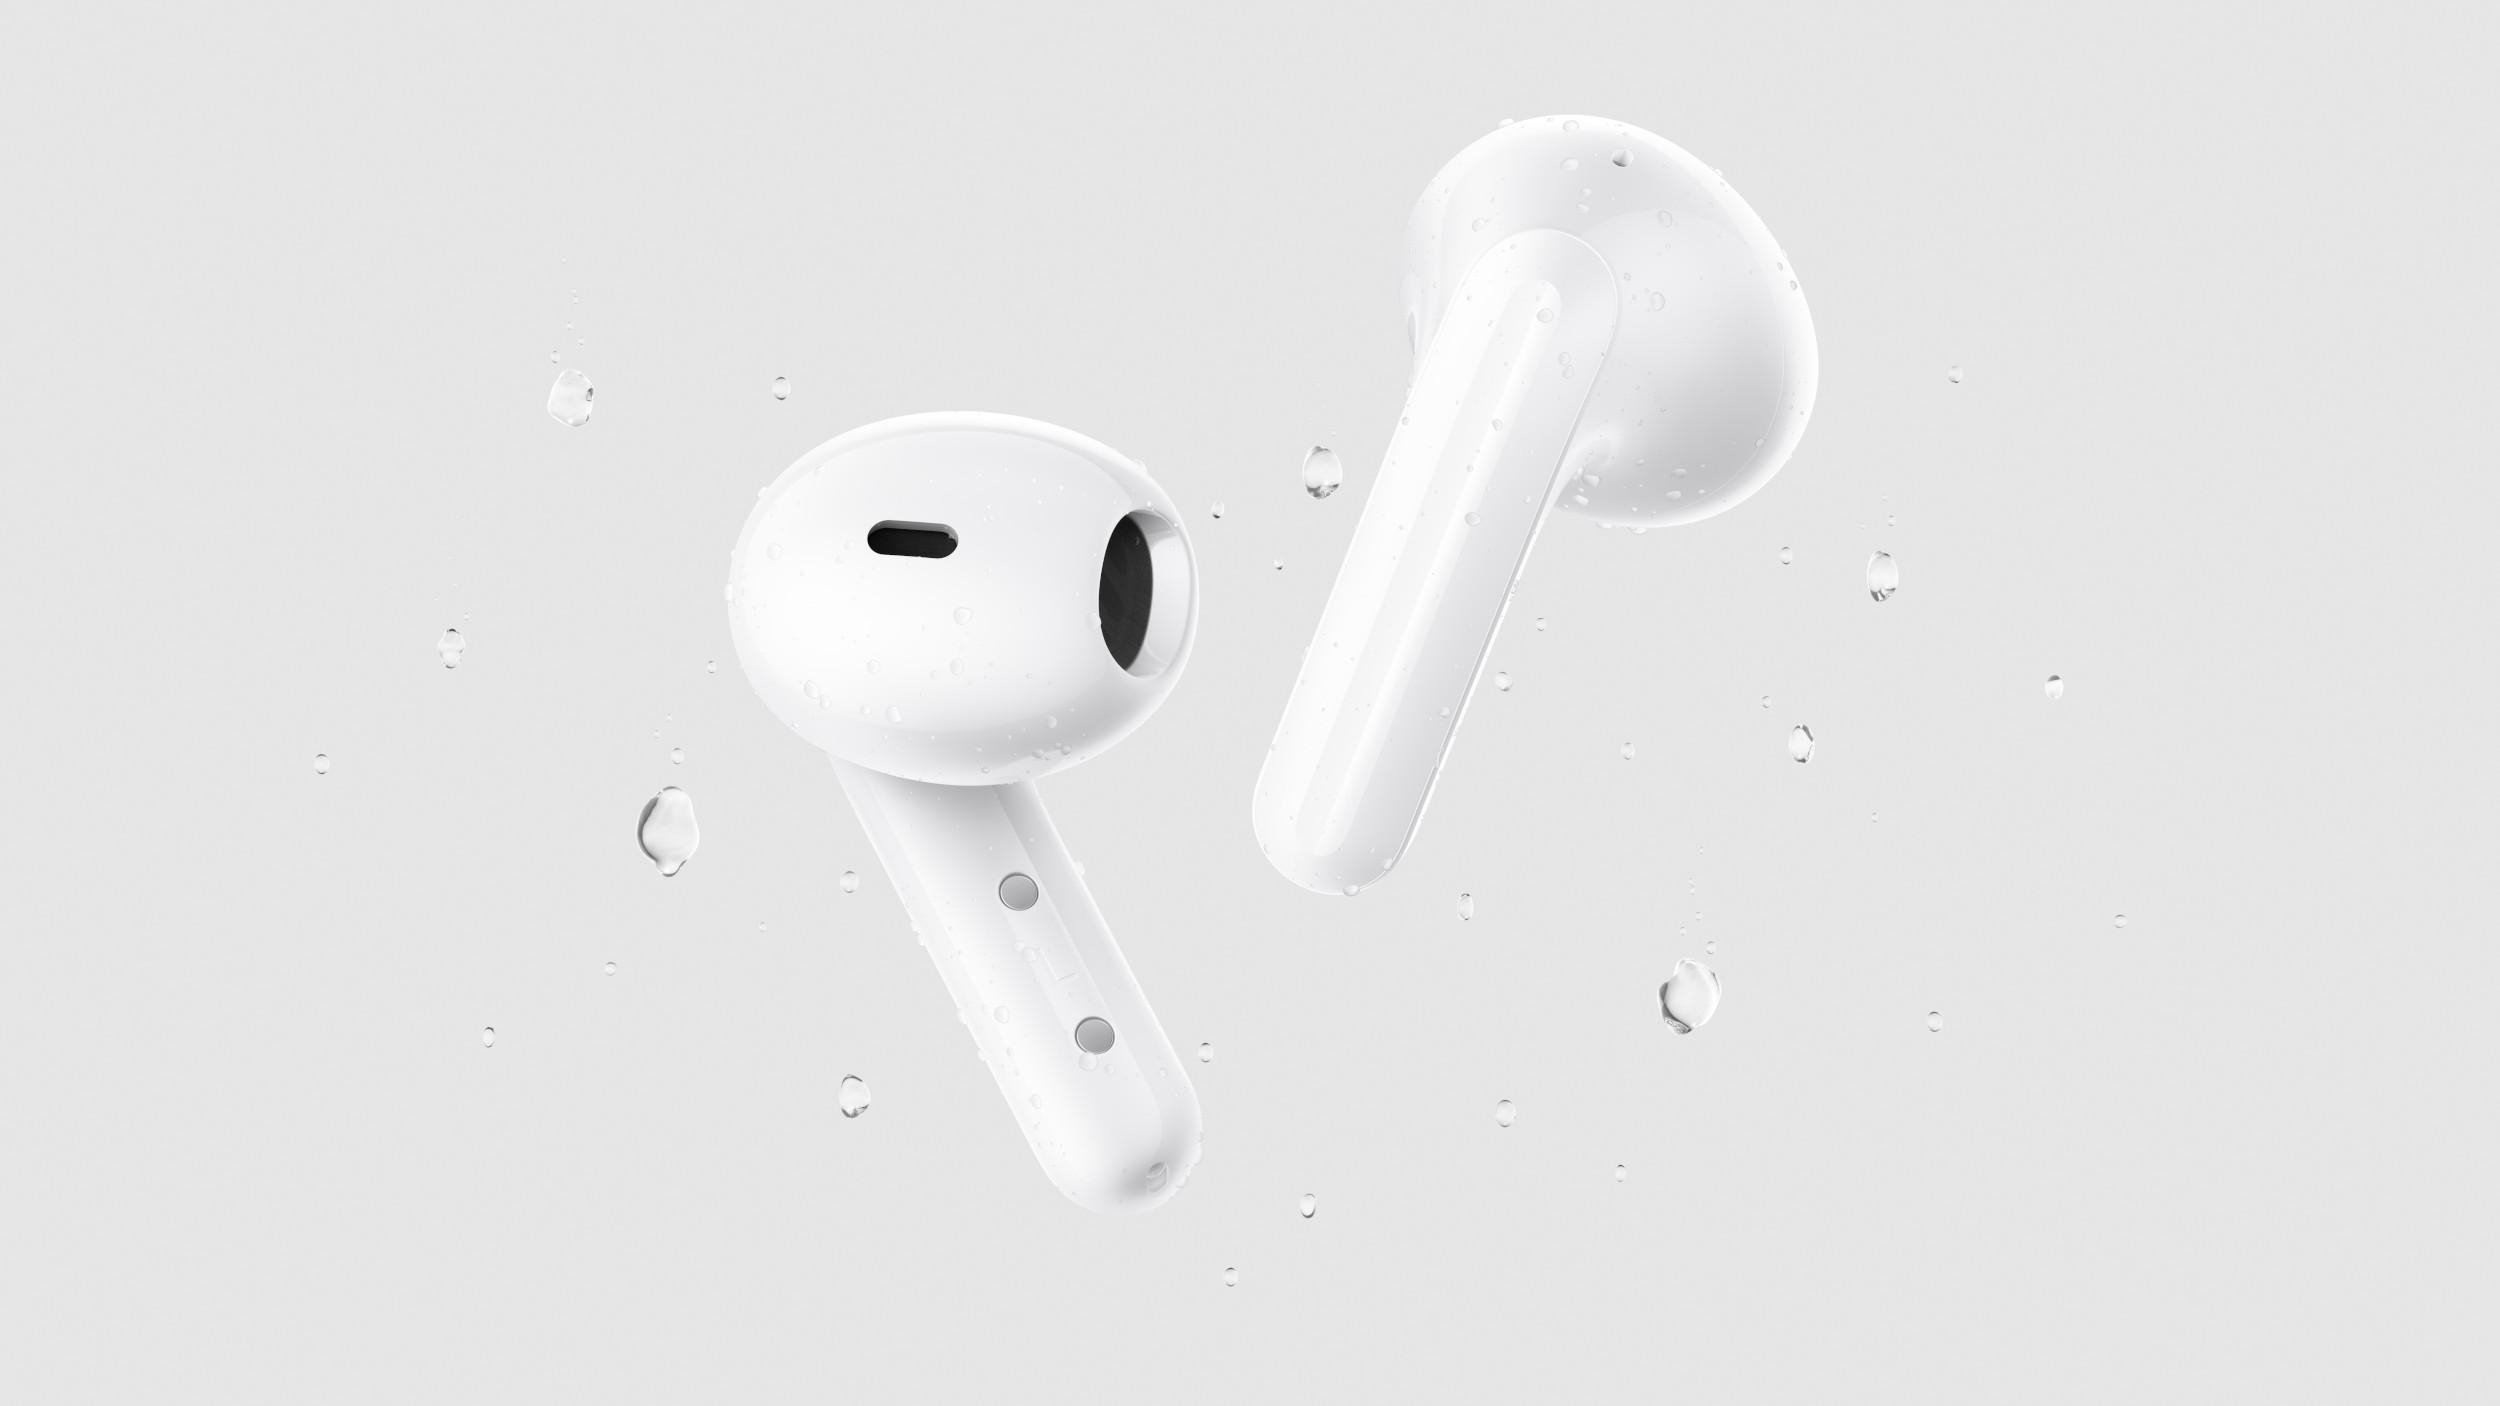 XIAOMI Lite, Bluetooth Buds Kopfhörer Redmi 4 White In-ear